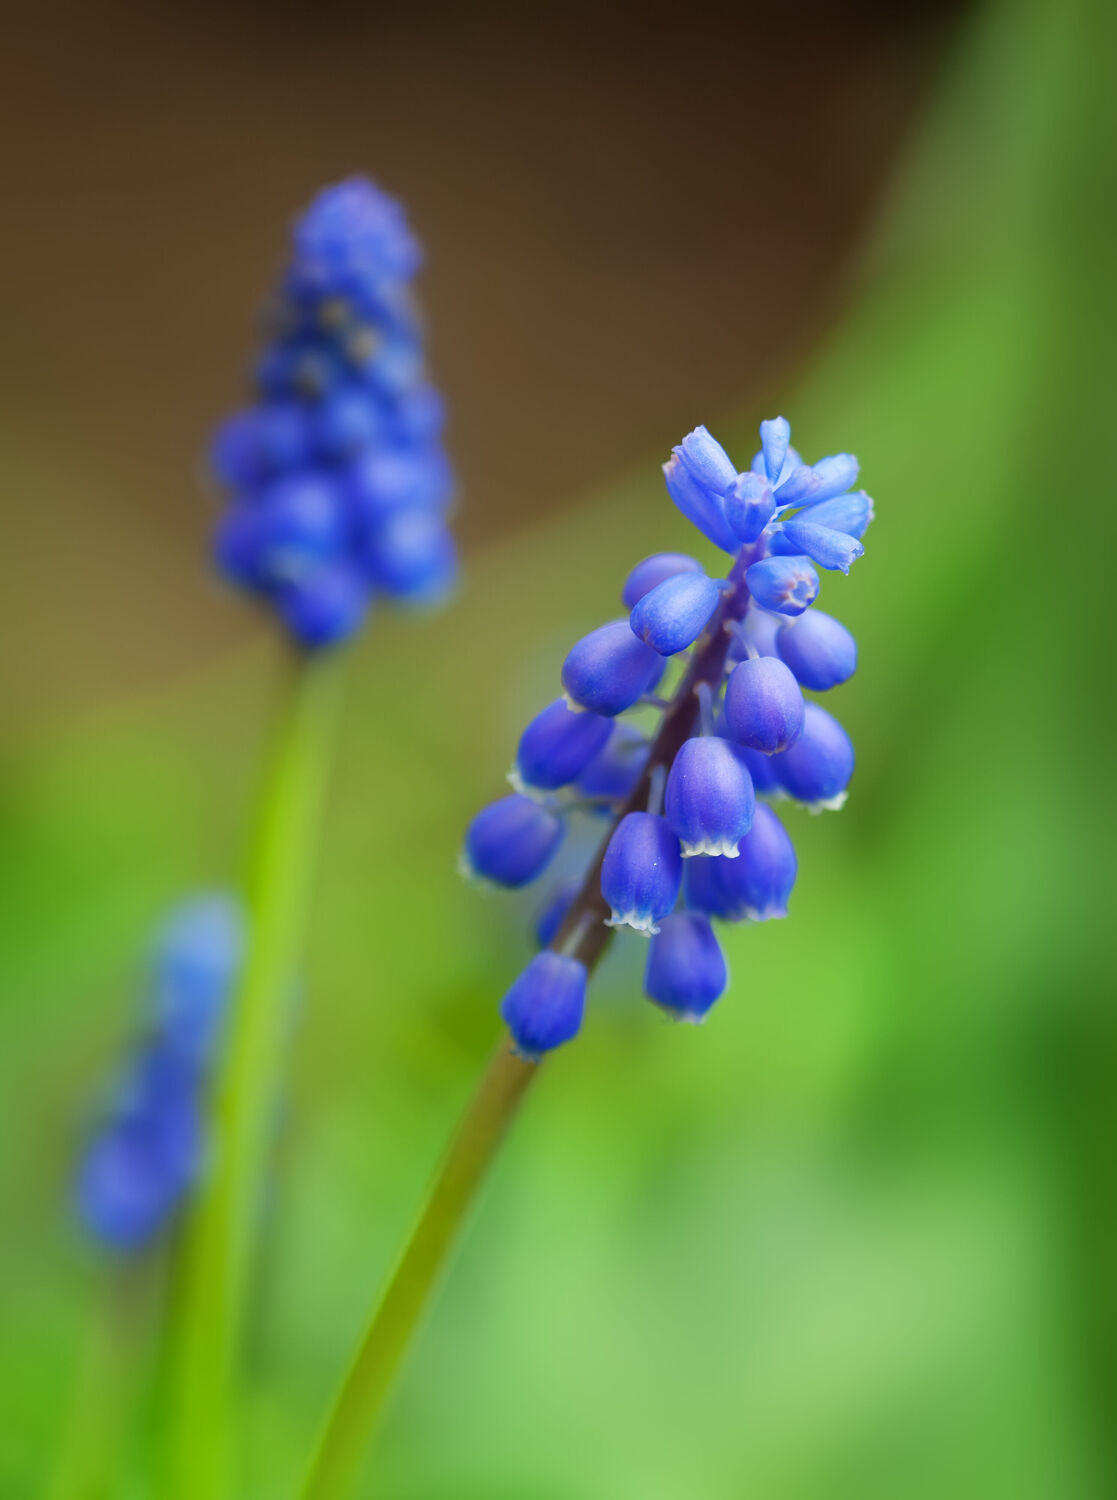 Bild mit Natur, Violett, Blau, Blume, Pflanze, Makro, blüte, detail, traubenhyazinthe, Muscari